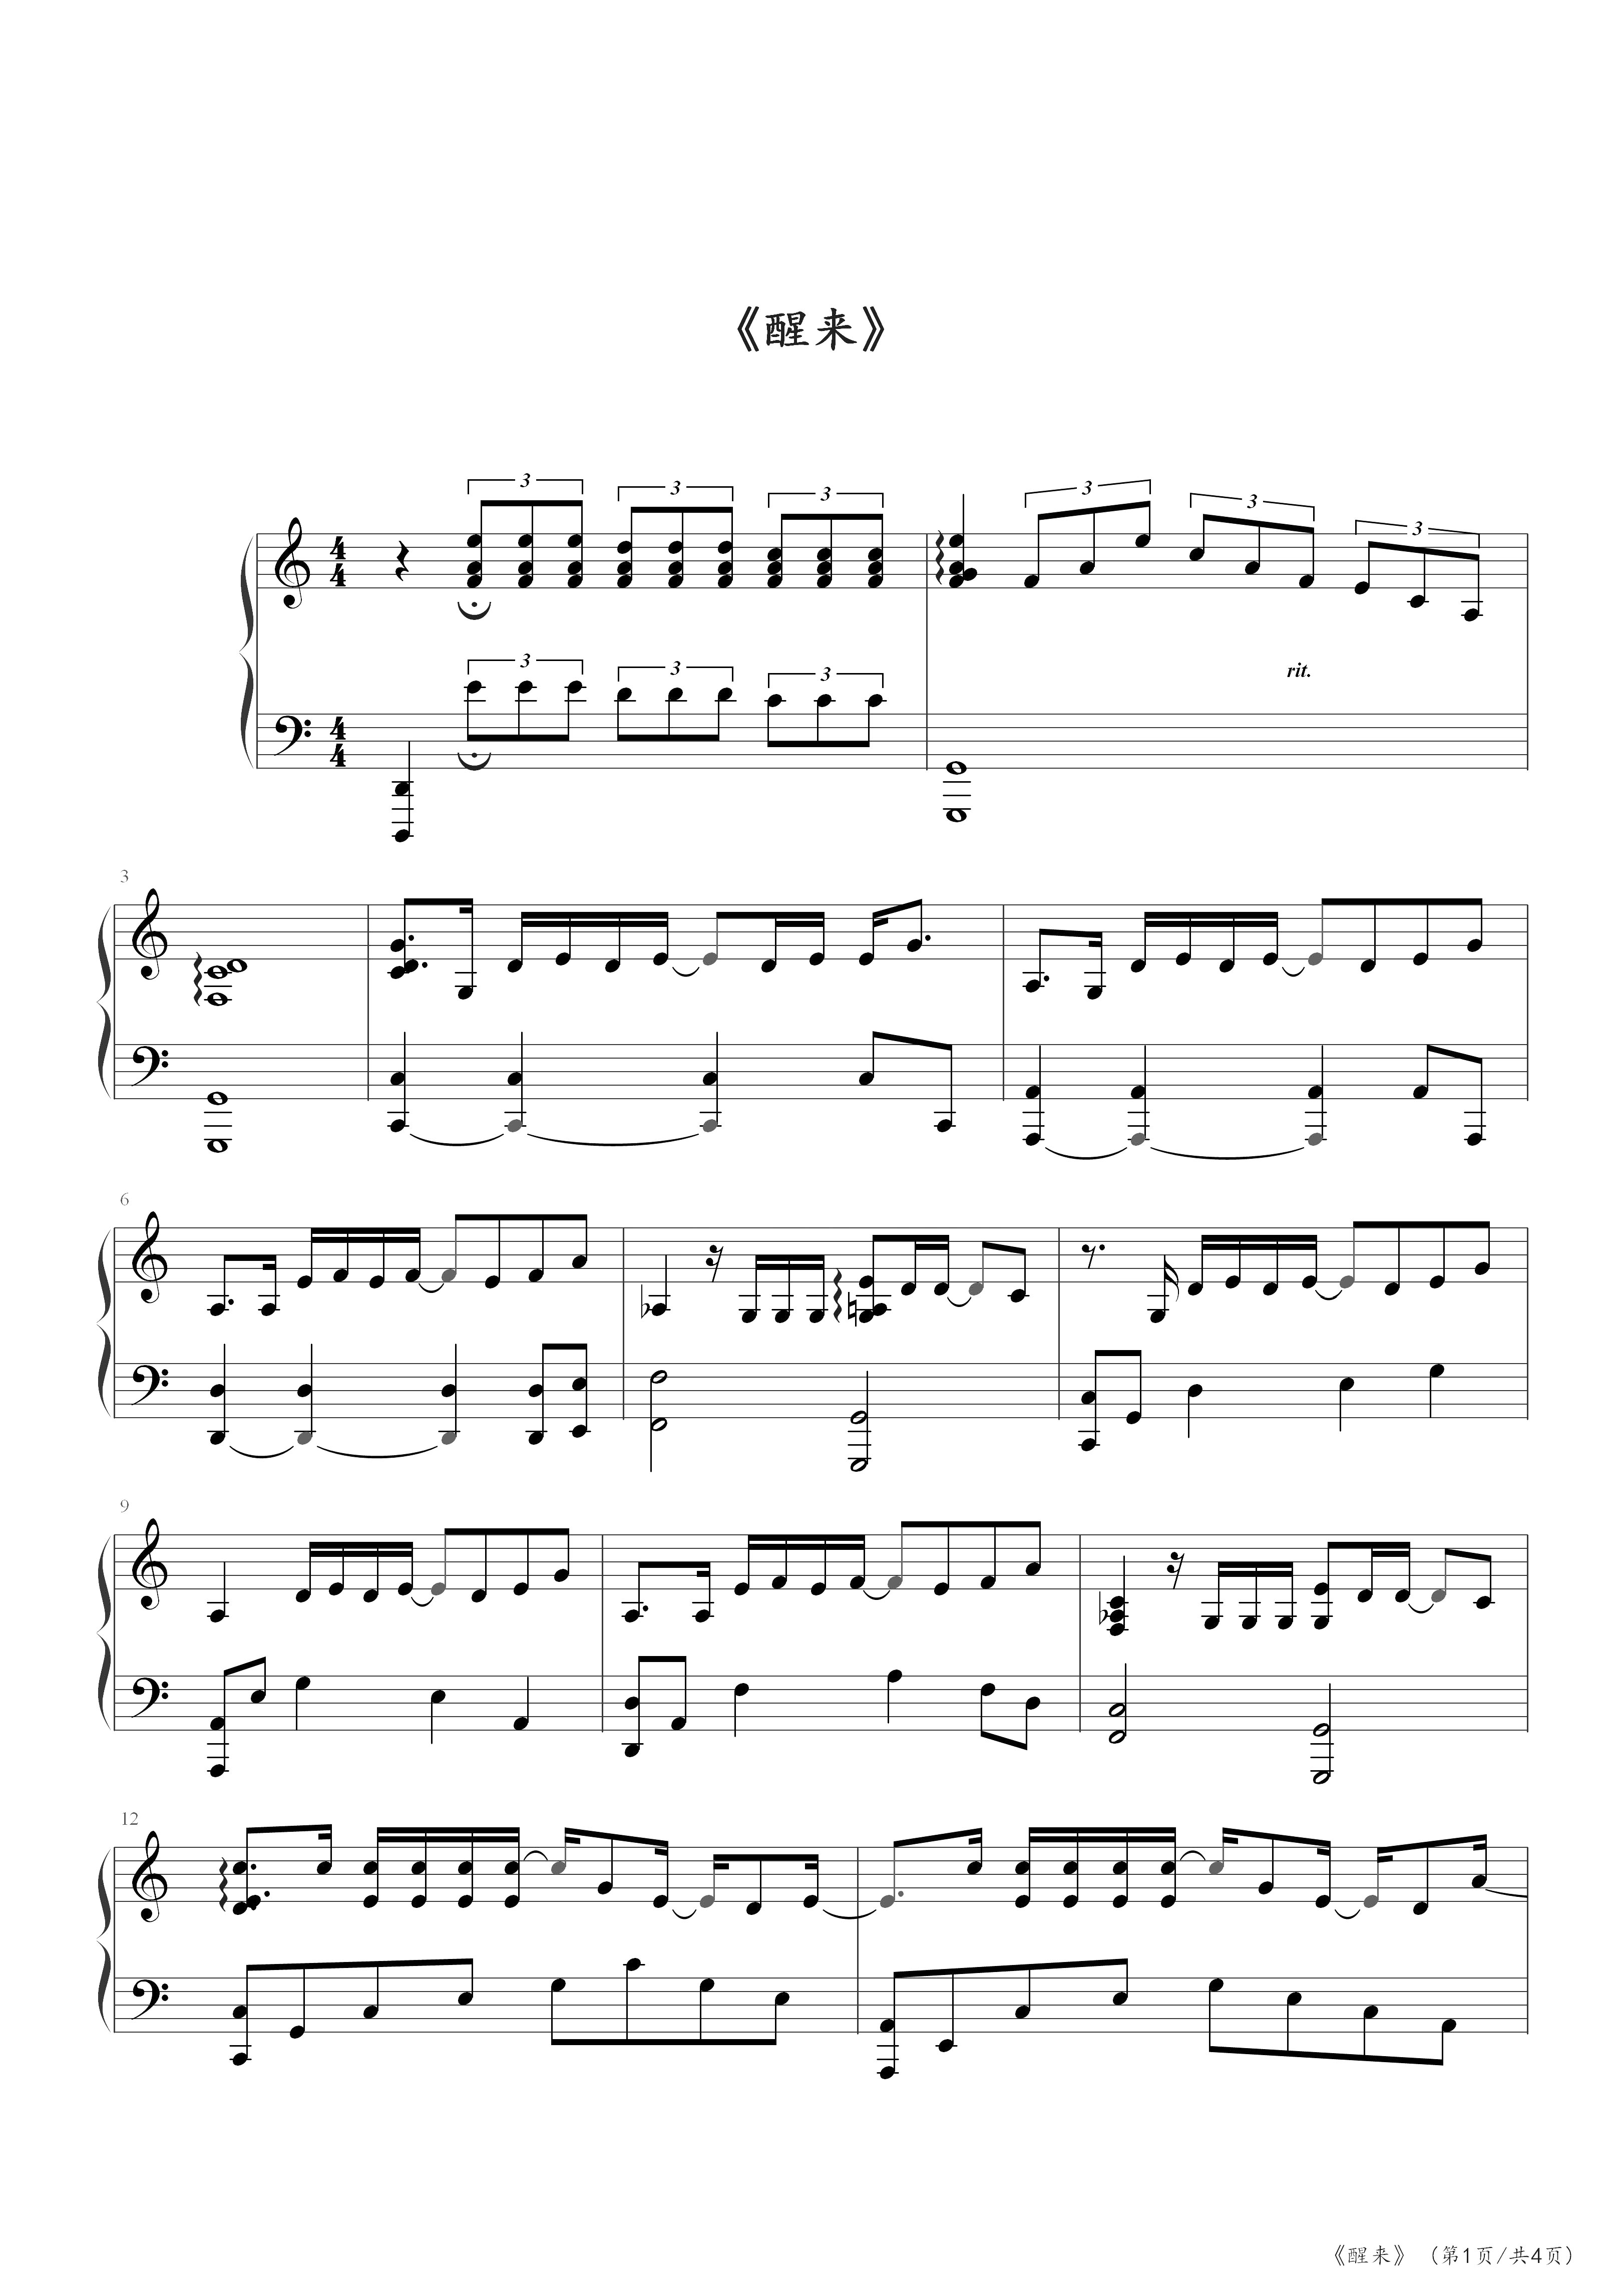 醒来-薛之谦和小岳岳的作业-无限歌谣季第6期五线谱预览3-钢琴谱文件（五线谱、双手简谱、数字谱、Midi、PDF）免费下载